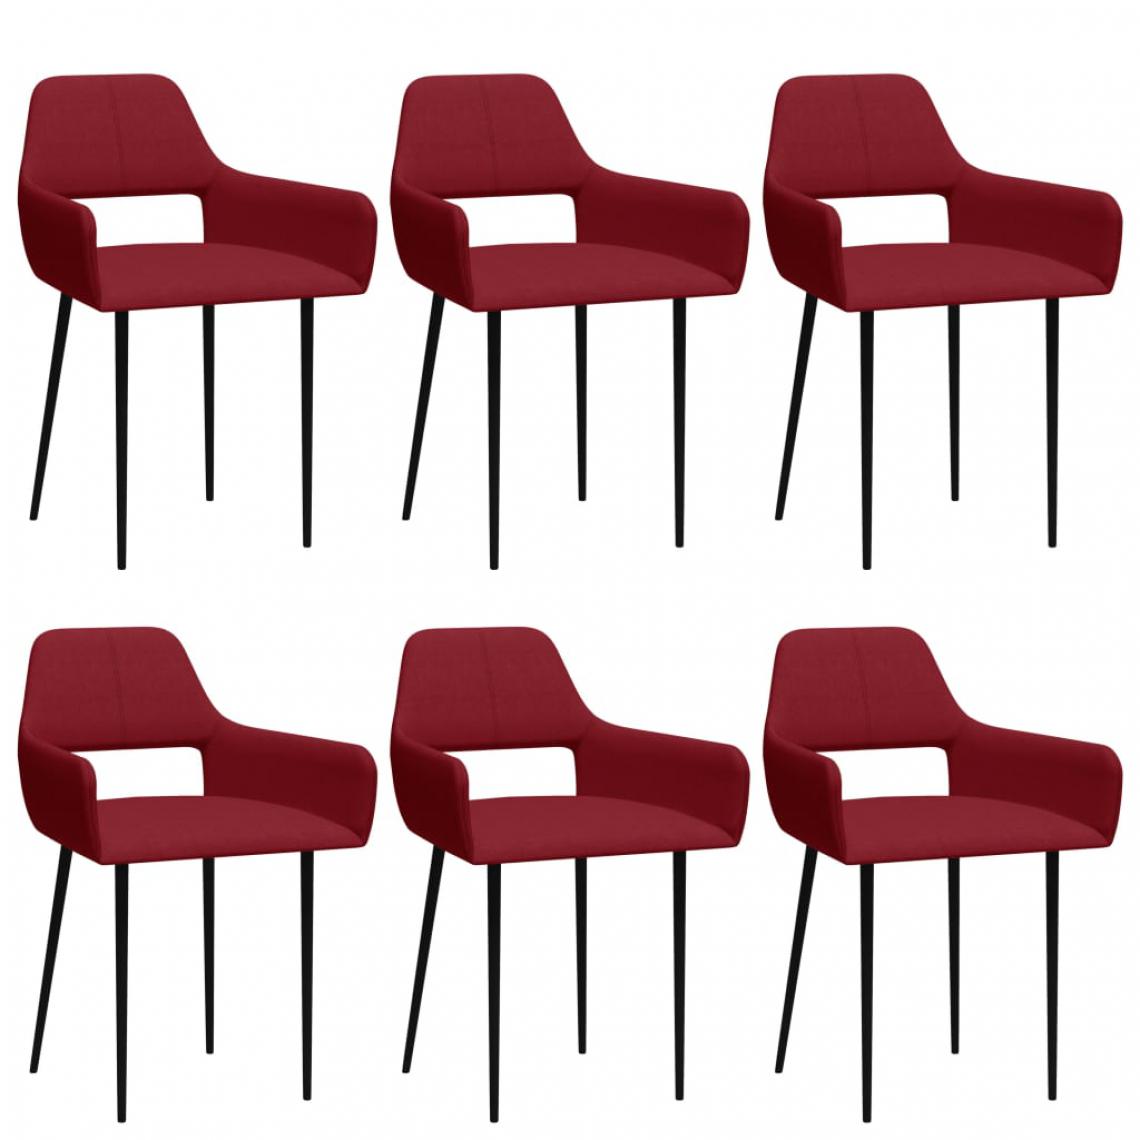 Icaverne - Moderne Fauteuils et chaises collection Bamako Chaises de salle à manger 6 pcs Rouge bordeaux Tissu - Chaises